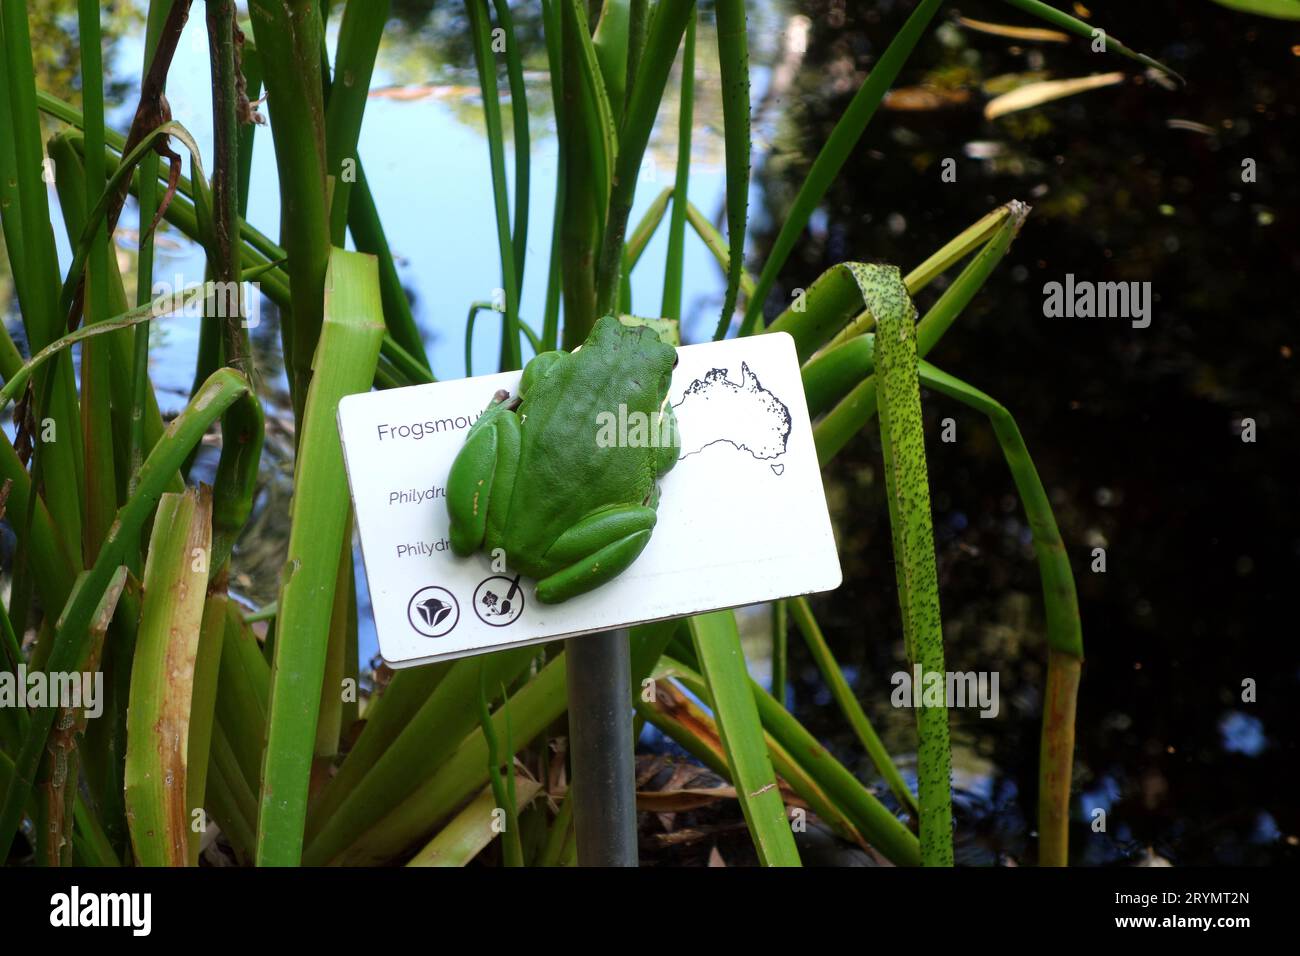 Weißlippiger grüner Baumfrosch (Litora infrafrenata) hängt am Schild für Frogsmouth-Pflanze (Philydrum lanuginosum) in den Cooktown Botanic Gardens Stockfoto